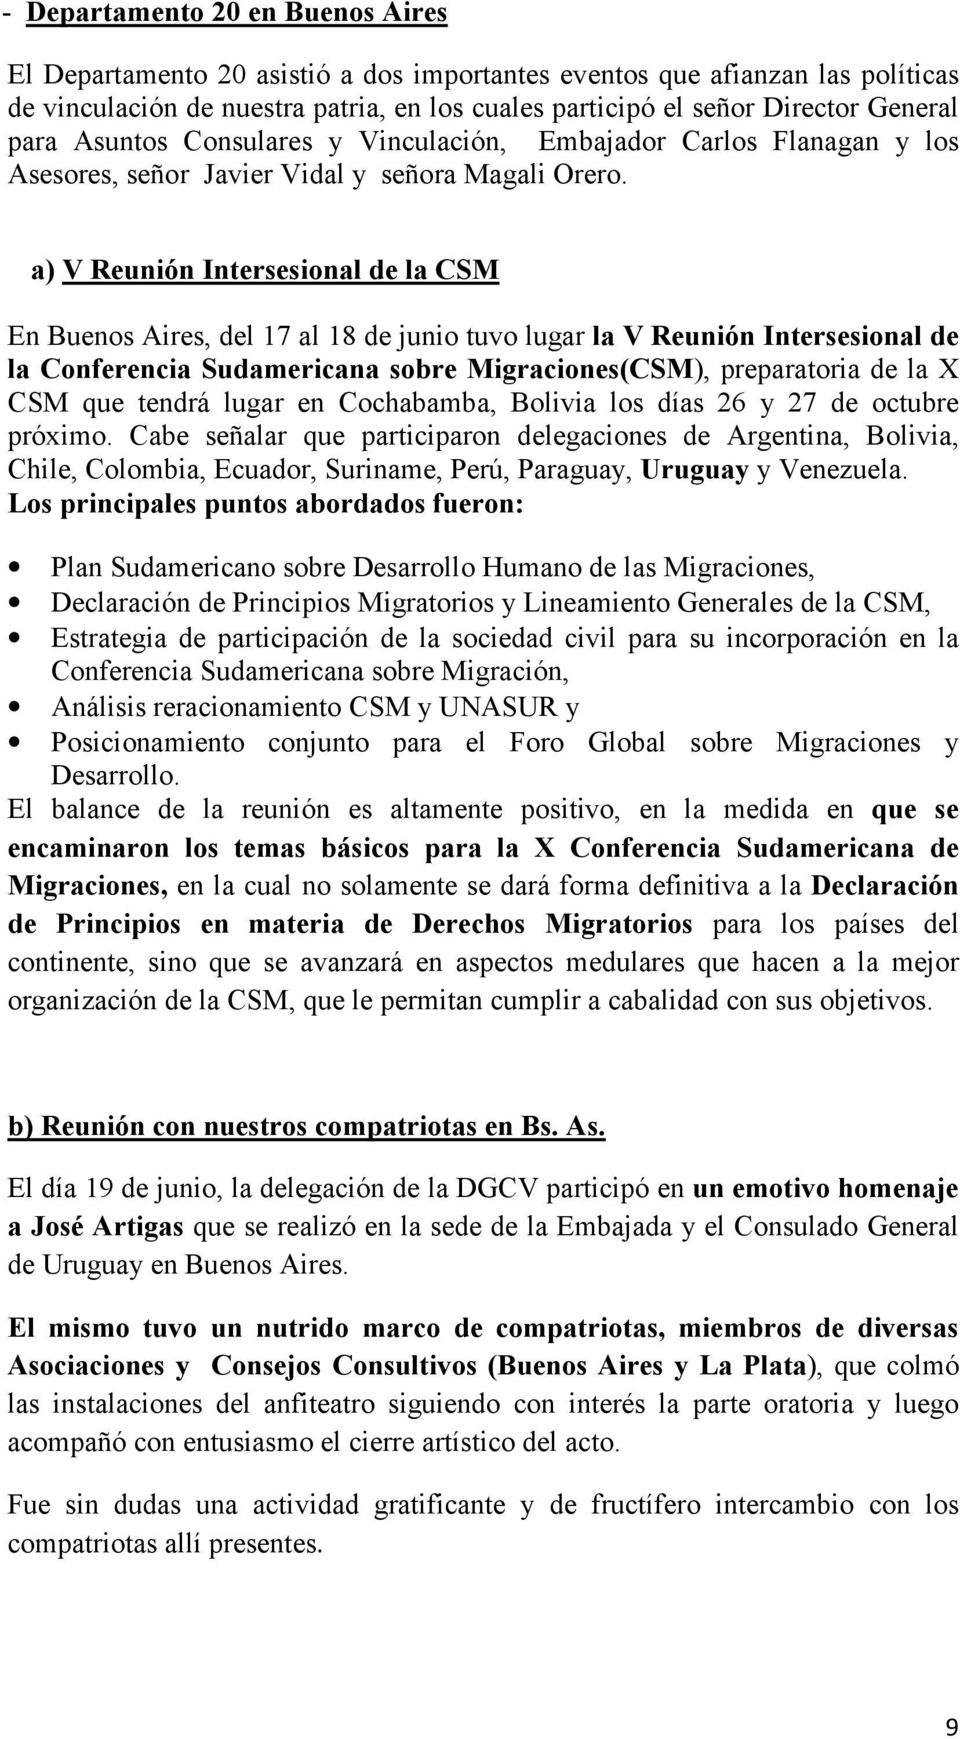 a) V Reunión Intersesional de la CSM En Buenos Aires, del 17 al 18 de junio tuvo lugar la V Reunión Intersesional de la Conferencia Sudamericana sobre Migraciones(CSM), preparatoria de la X CSM que